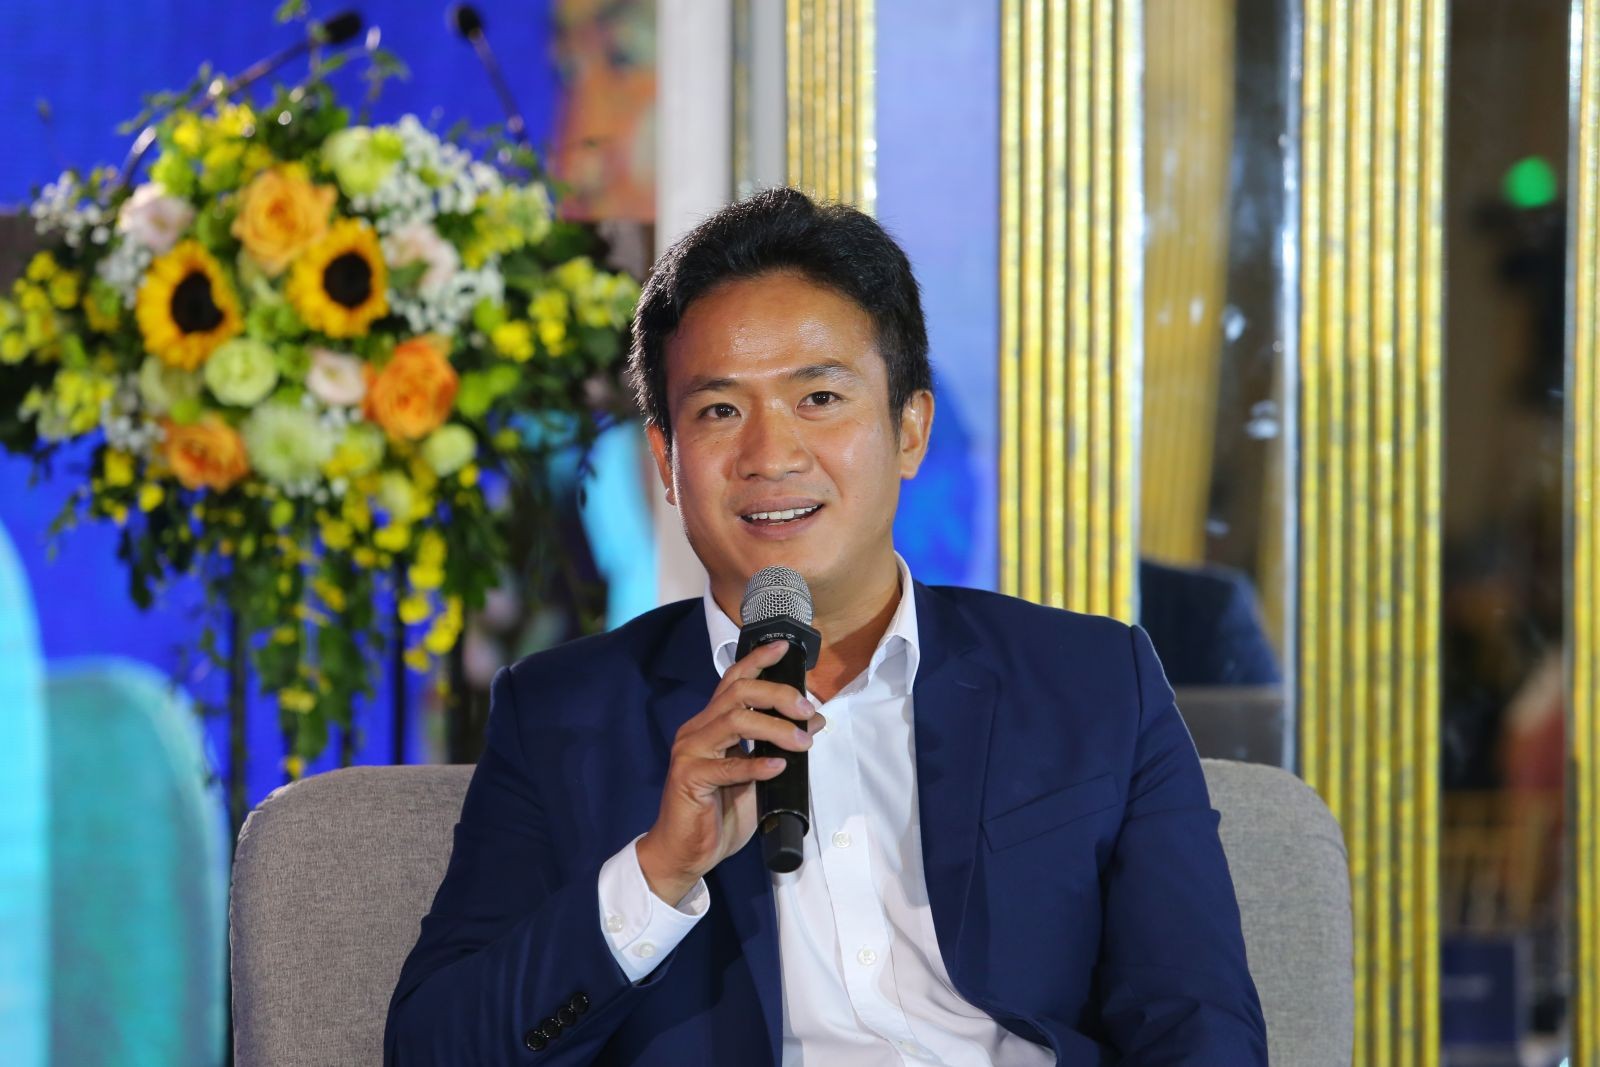 Giám đốc CNTT Đất Xanh Miền Bắc chia sẻ về chuyển đổi số doanh nghiệp bất động sản